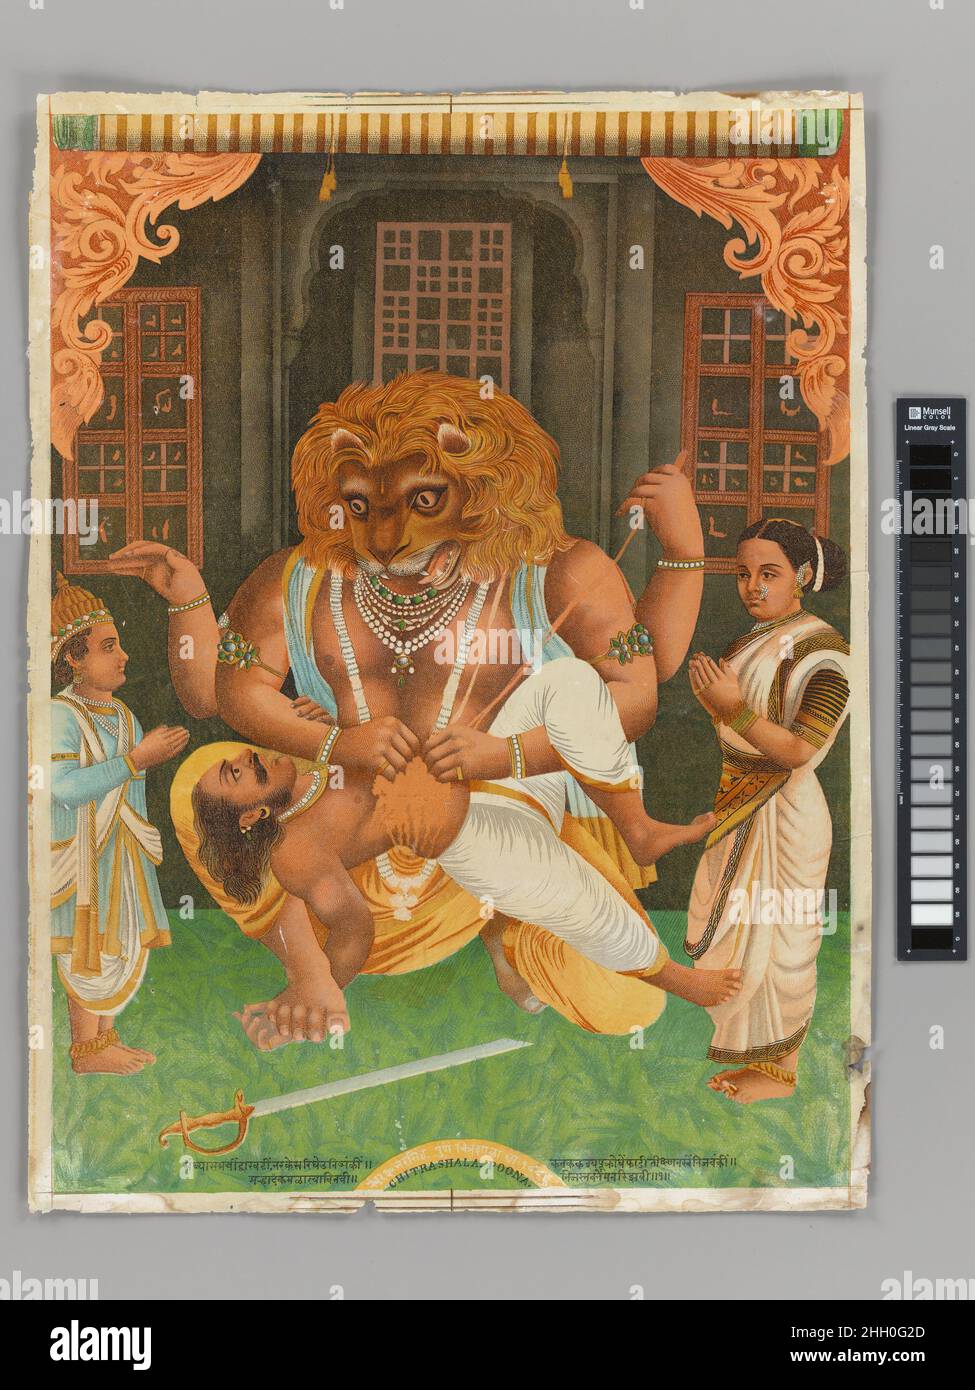 Narasimha 1886 Inde, Maharashtra, Pune Narasimha, l'avatar homme-lion de Vishnu, tire le roi démon Hiranyakashipu sur ses genoux et le défait avec ses griffes.Ce roi démon avait obtenu des pouvoirs protecteurs spéciaux par sa maîtrise des austériités yogiques, ce qui signifie qu'il ne pouvait pas être tué pendant la journée ou la nuit, à l'intérieur ou à l'extérieur, par des armes, ou par un dieu, un démon, un homme ou un animal.Le roi Hiranyakashipu avait essayé à plusieurs reprises de tuer son propre fils Prahlada, un dévot inébranlable de Vishnu, et de venger ce mal, Vishnu descendit dans cette forme féroce pour le tuer.Prahlada et sa femme Banque D'Images